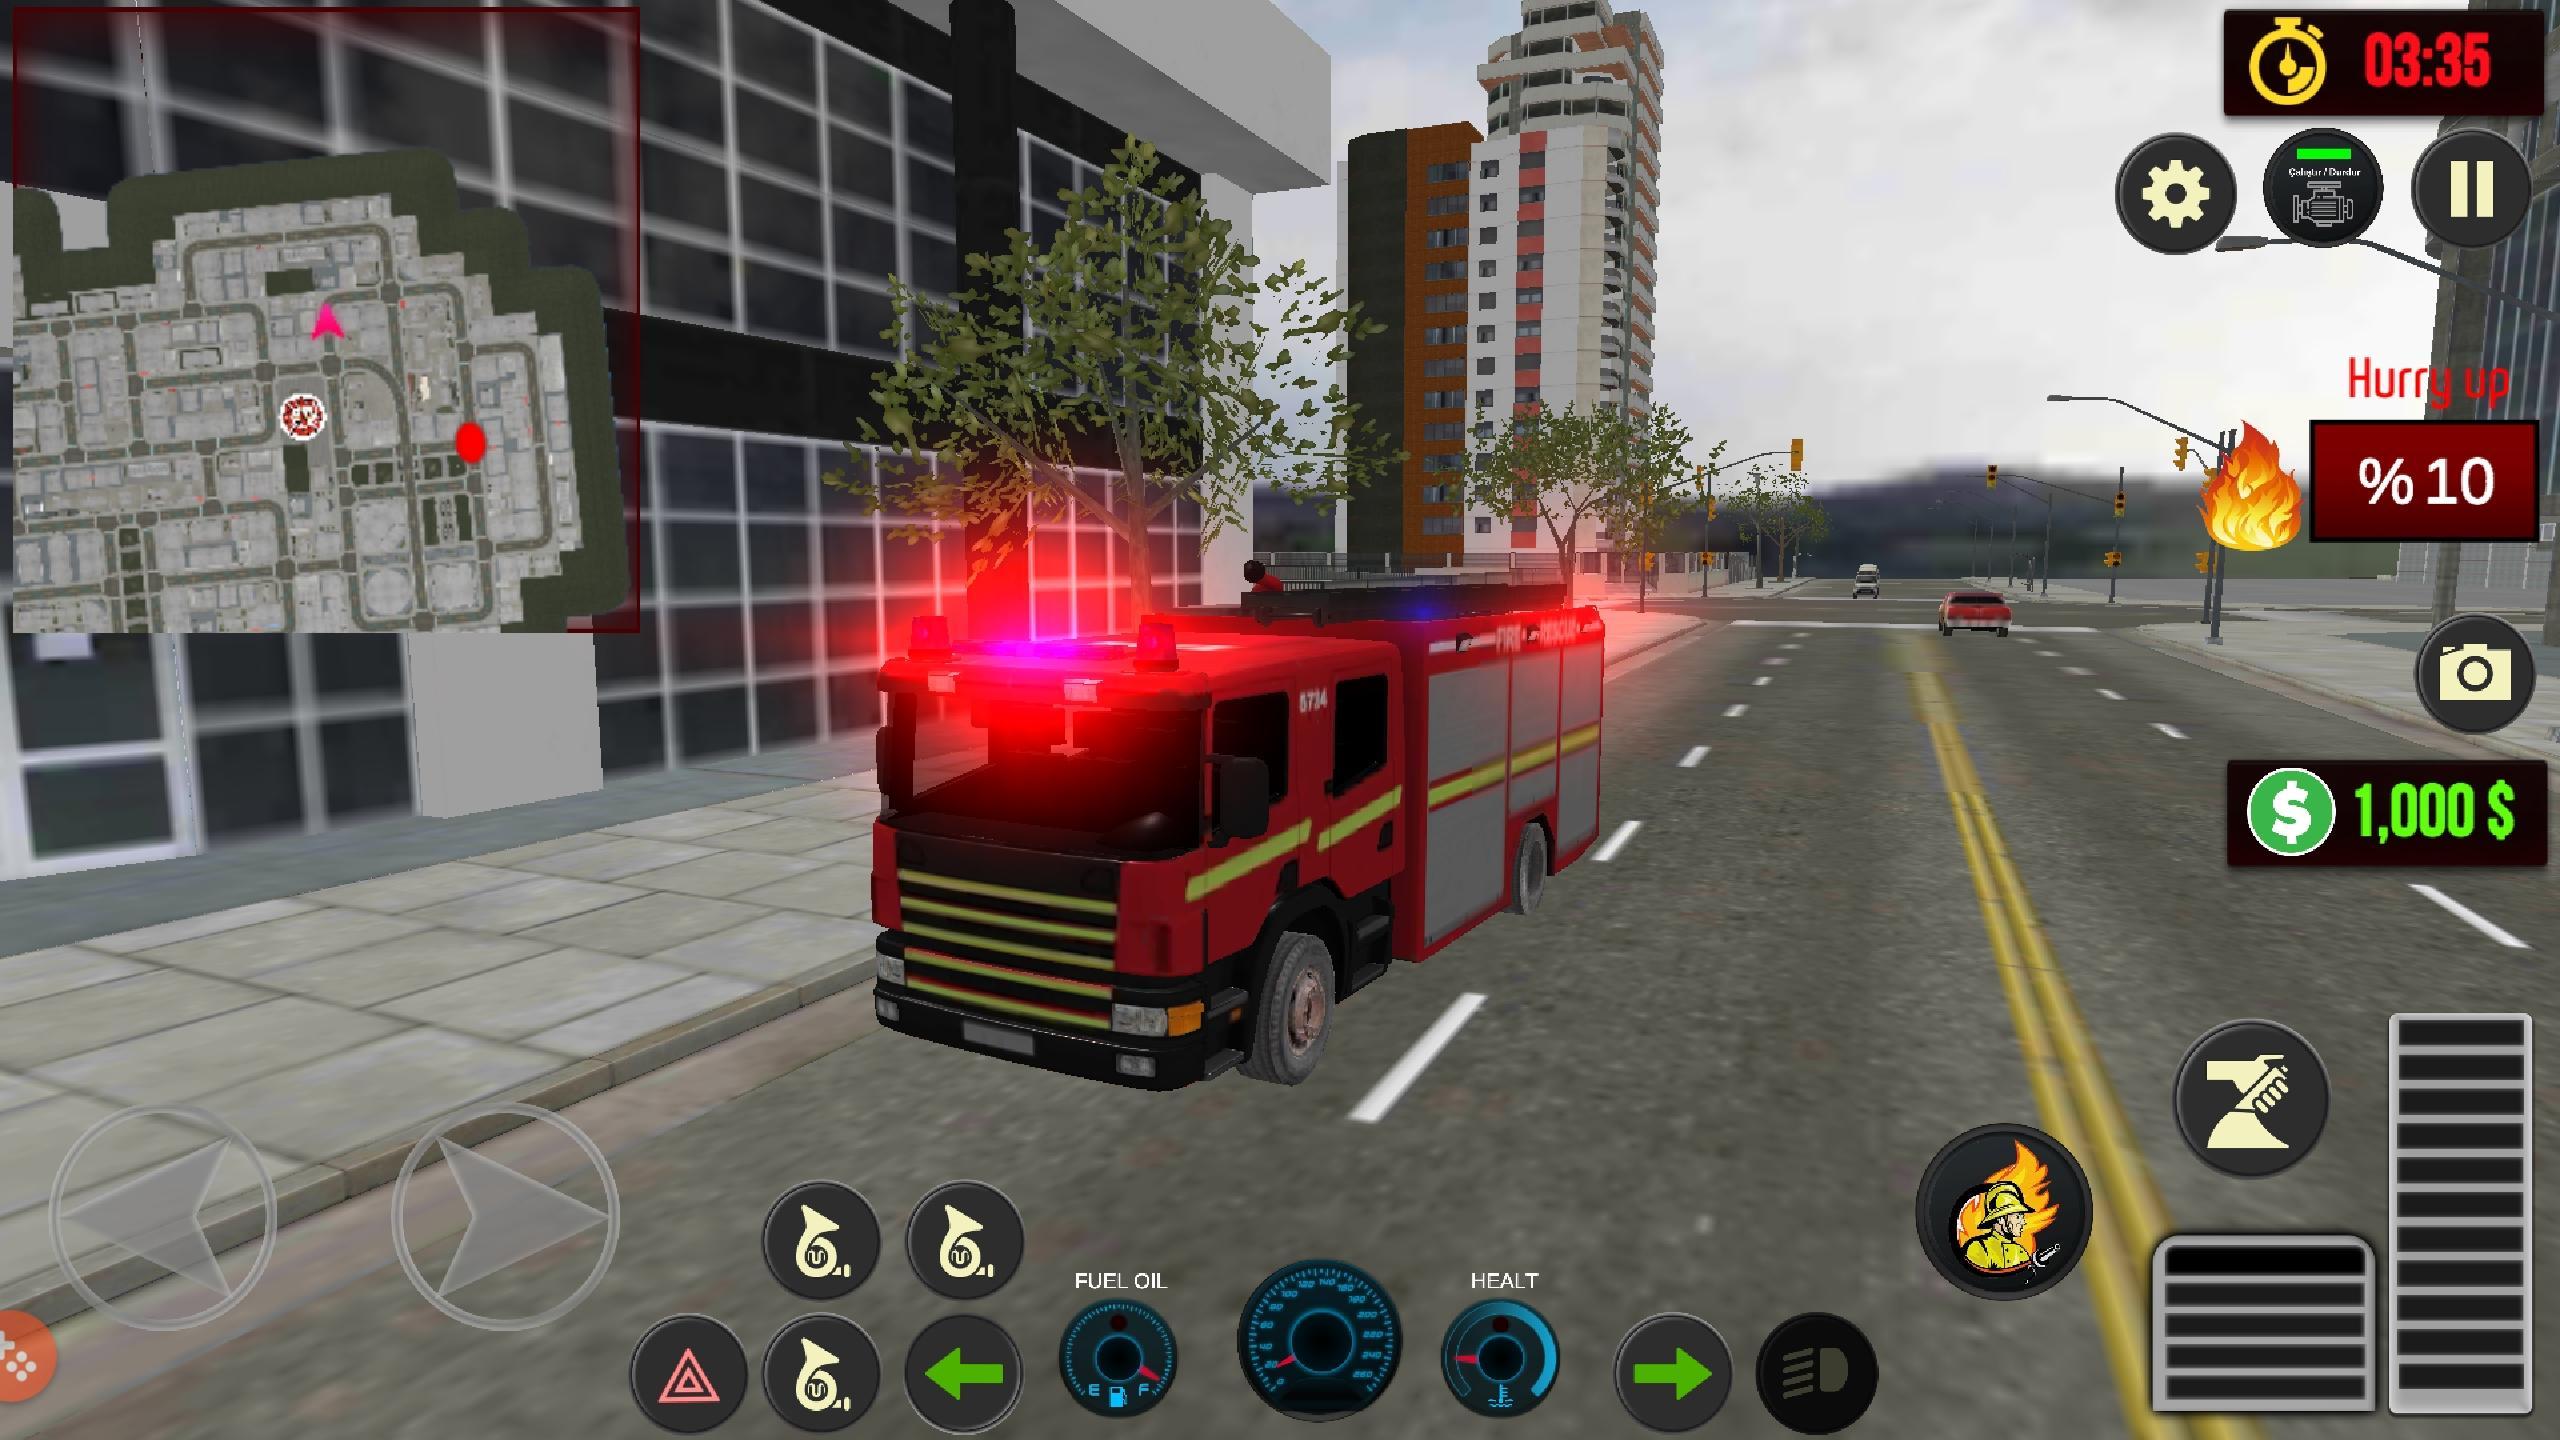 Симулятор пожарной машины. Симулятор пожарной машины на андроид. Симулятор 112. Симулятор 911 пожарных на ПК. 3д игра раннер про пожарные машины на Android.